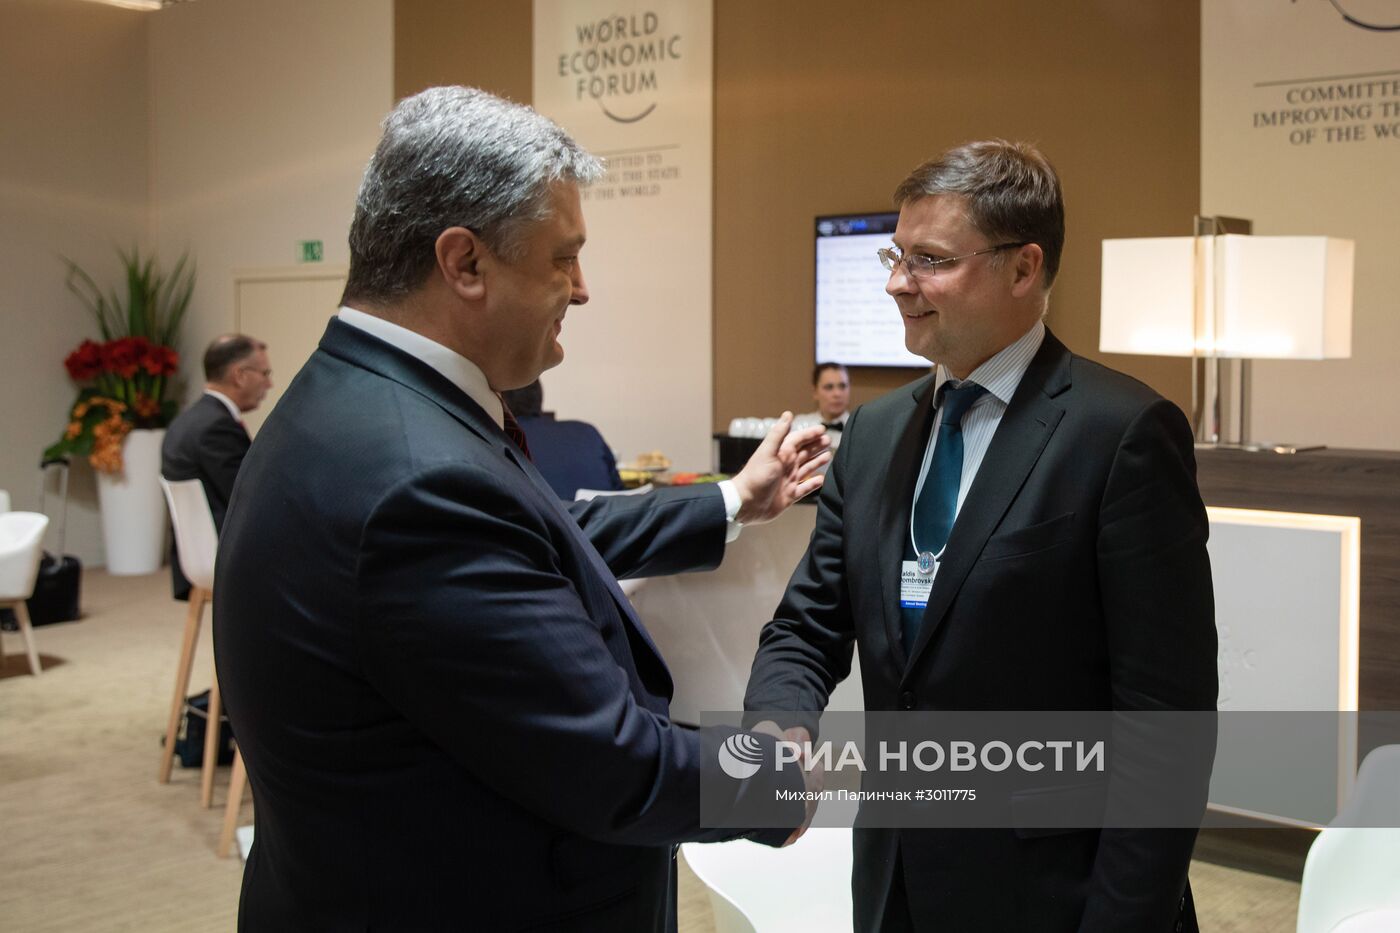 Рабочий визит президента Украины Петра Порошенко в Швейцарию